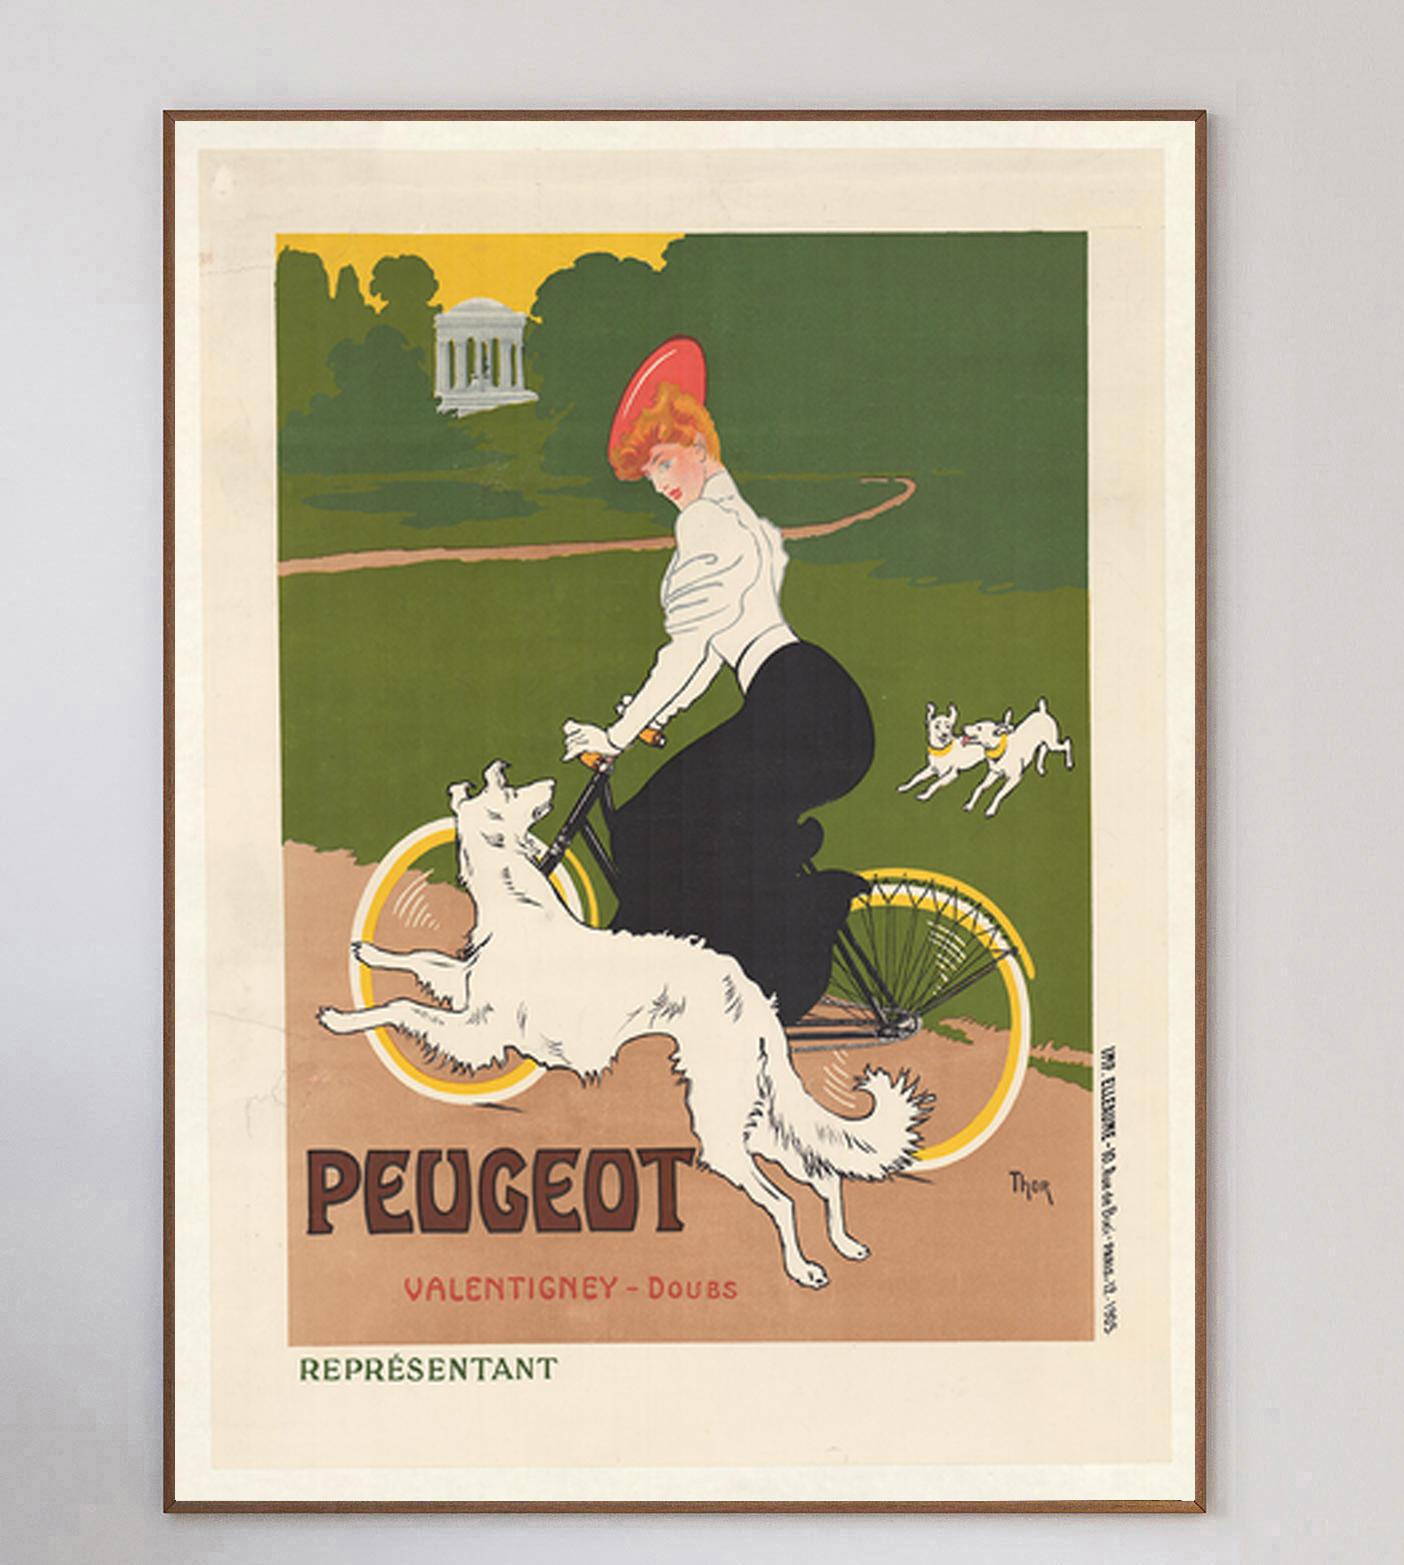 Dieses schöne Plakat wurde 1905 von dem deutschen Maler und Illustrator Walter Thor gestaltet. Das Kunstwerk, das für Peugeot Cycles in der Gemeinde Valentigney im Doubs (Frankreich) wirbt, zeigt eine Frau, die zusammen mit ihren Hunden radelt, in